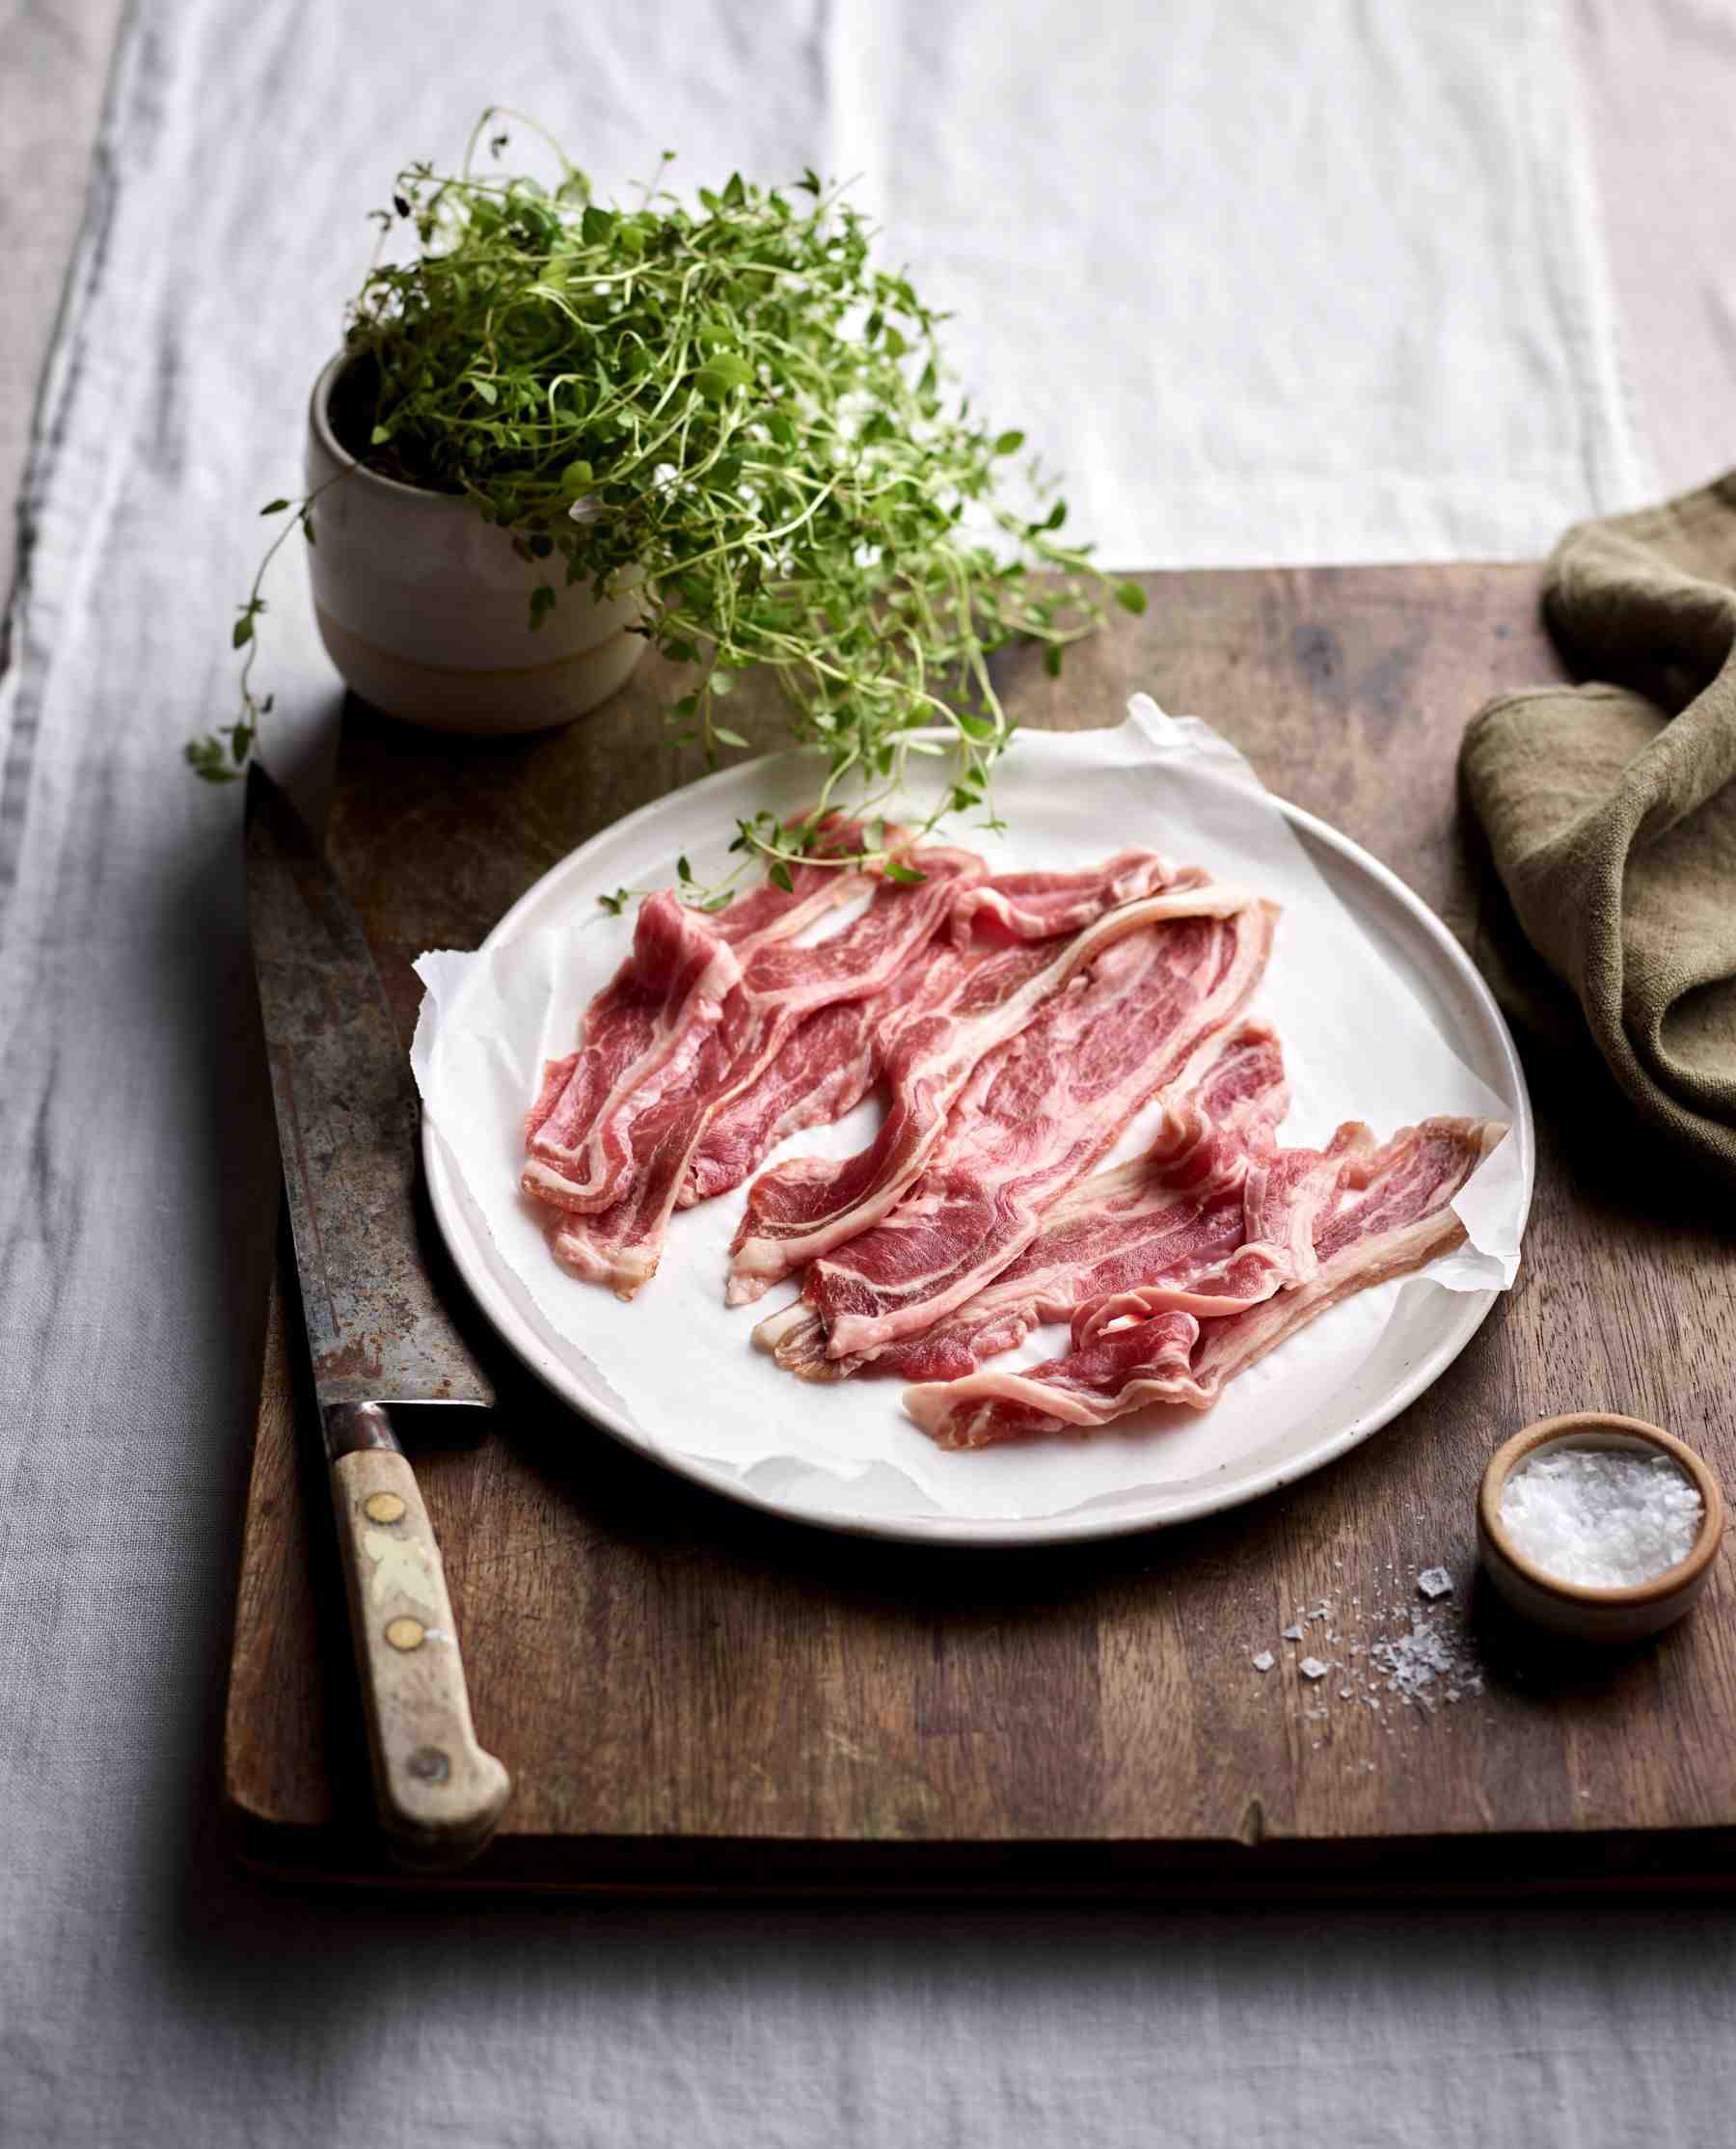 Whats healthier beef bacon or pork bacon?